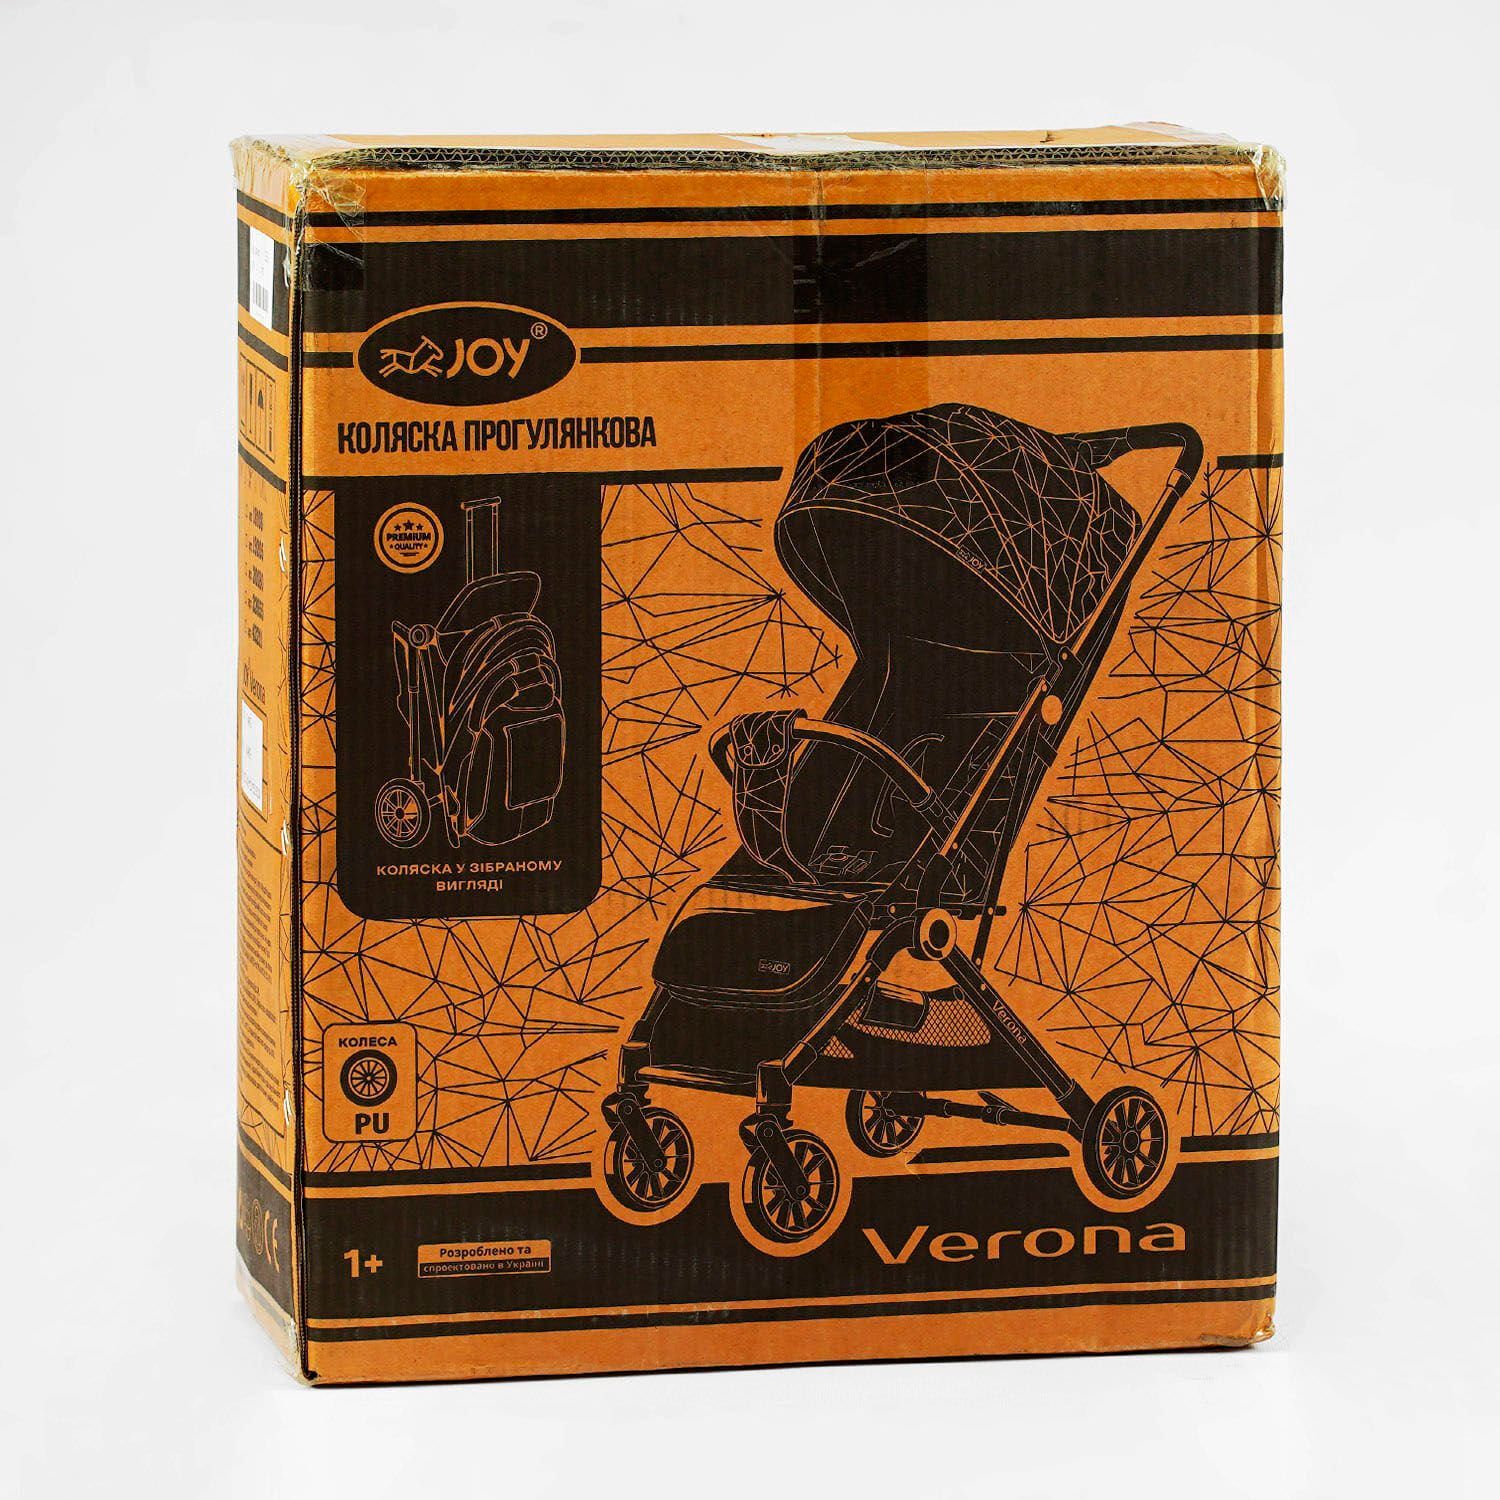 Візок прогулянковий дитячий "JOY" Verona 32655 (1) рама сталева, футкавер, підсклянник, телескопічна ручка